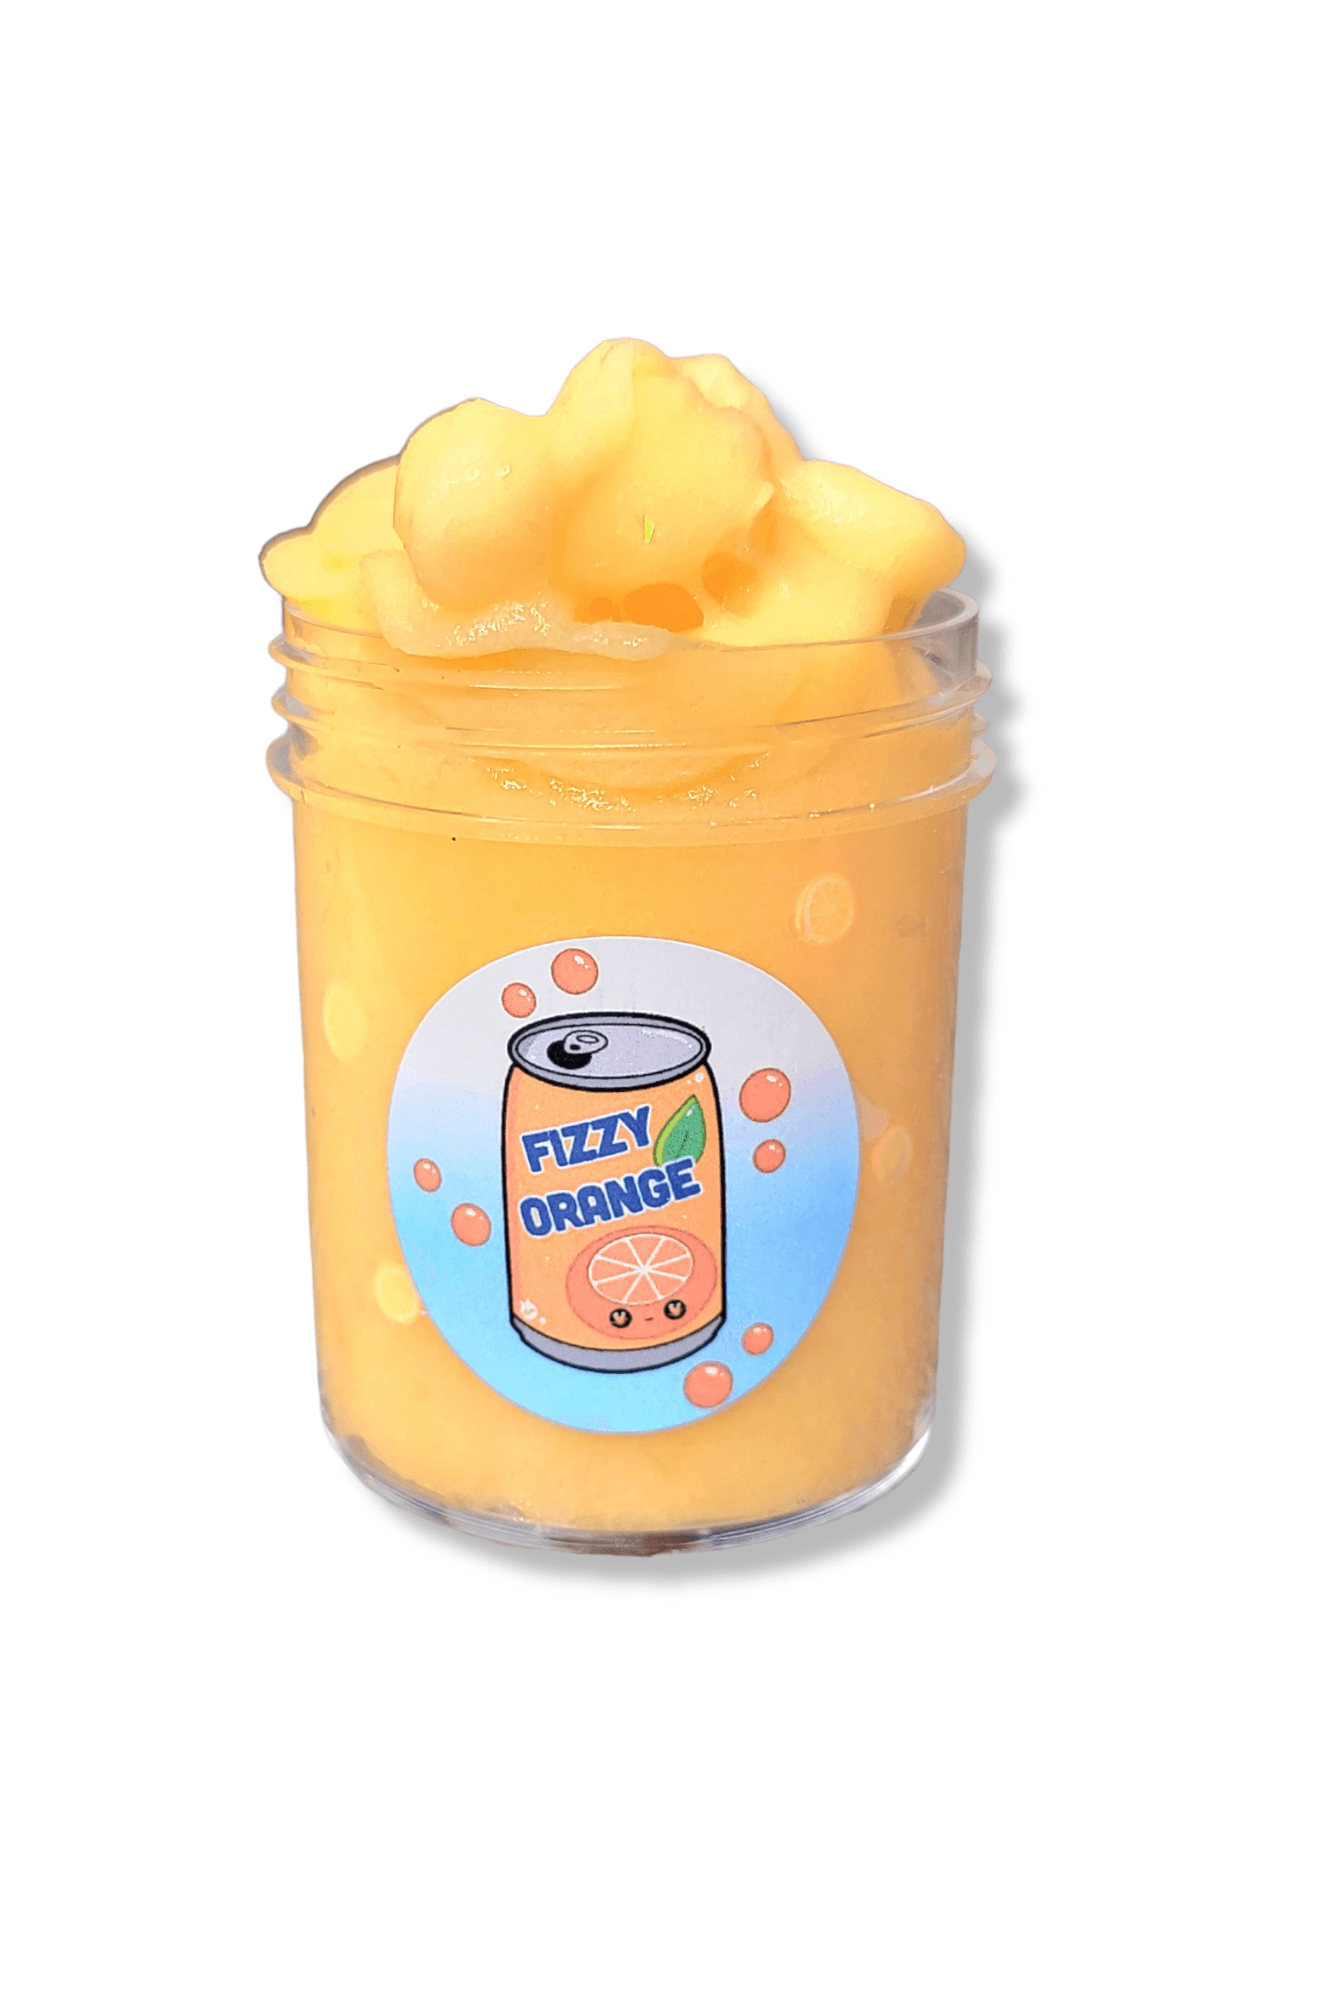 Fizzy Orange Soda Handmade Scented Jelly Slime Slime by Hoshimi Slimes LLC | Hoshimi Slimes LLC